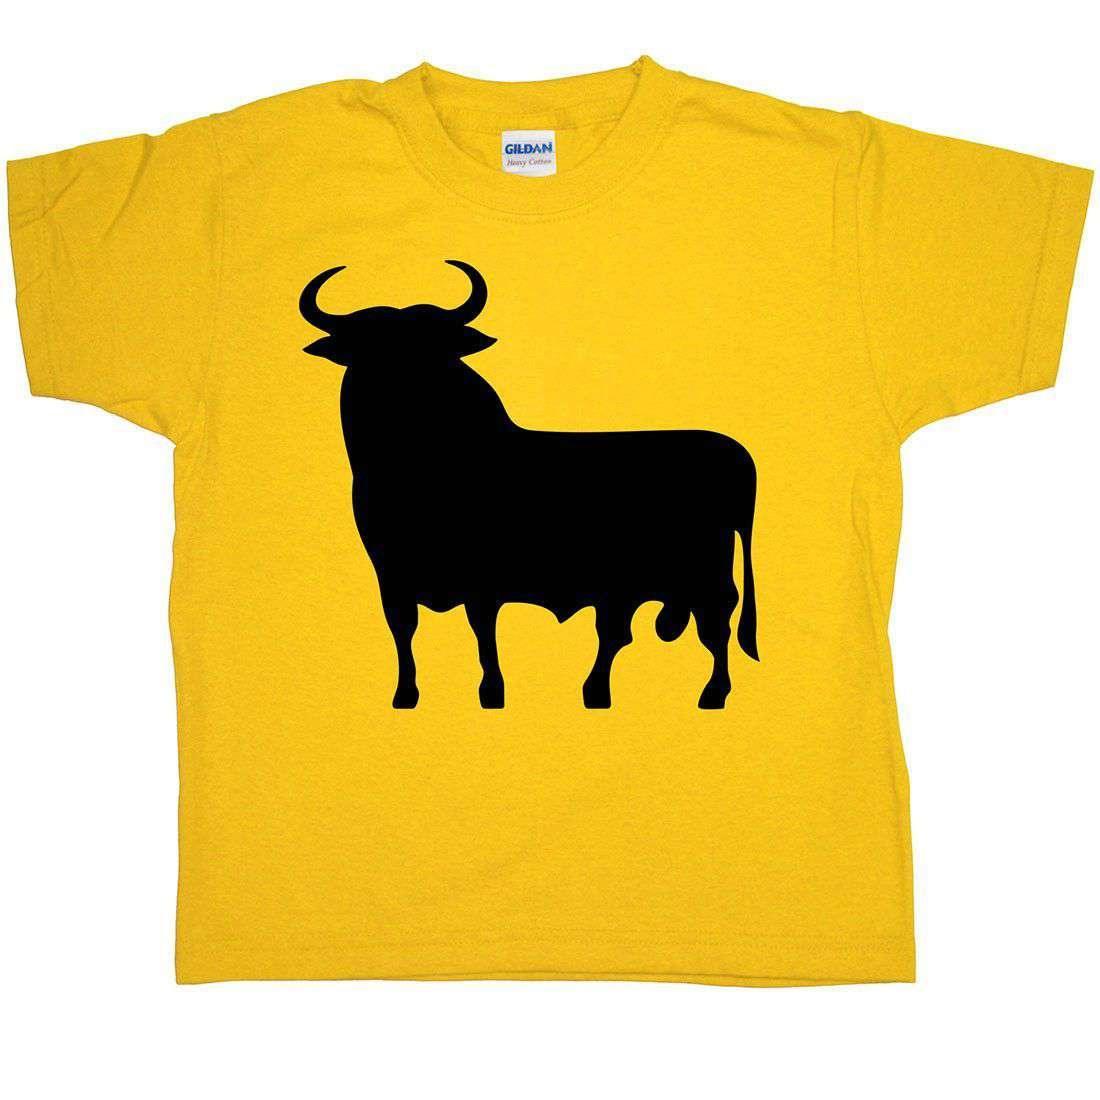 Spanish Bull Childrens T-Shirt 8Ball